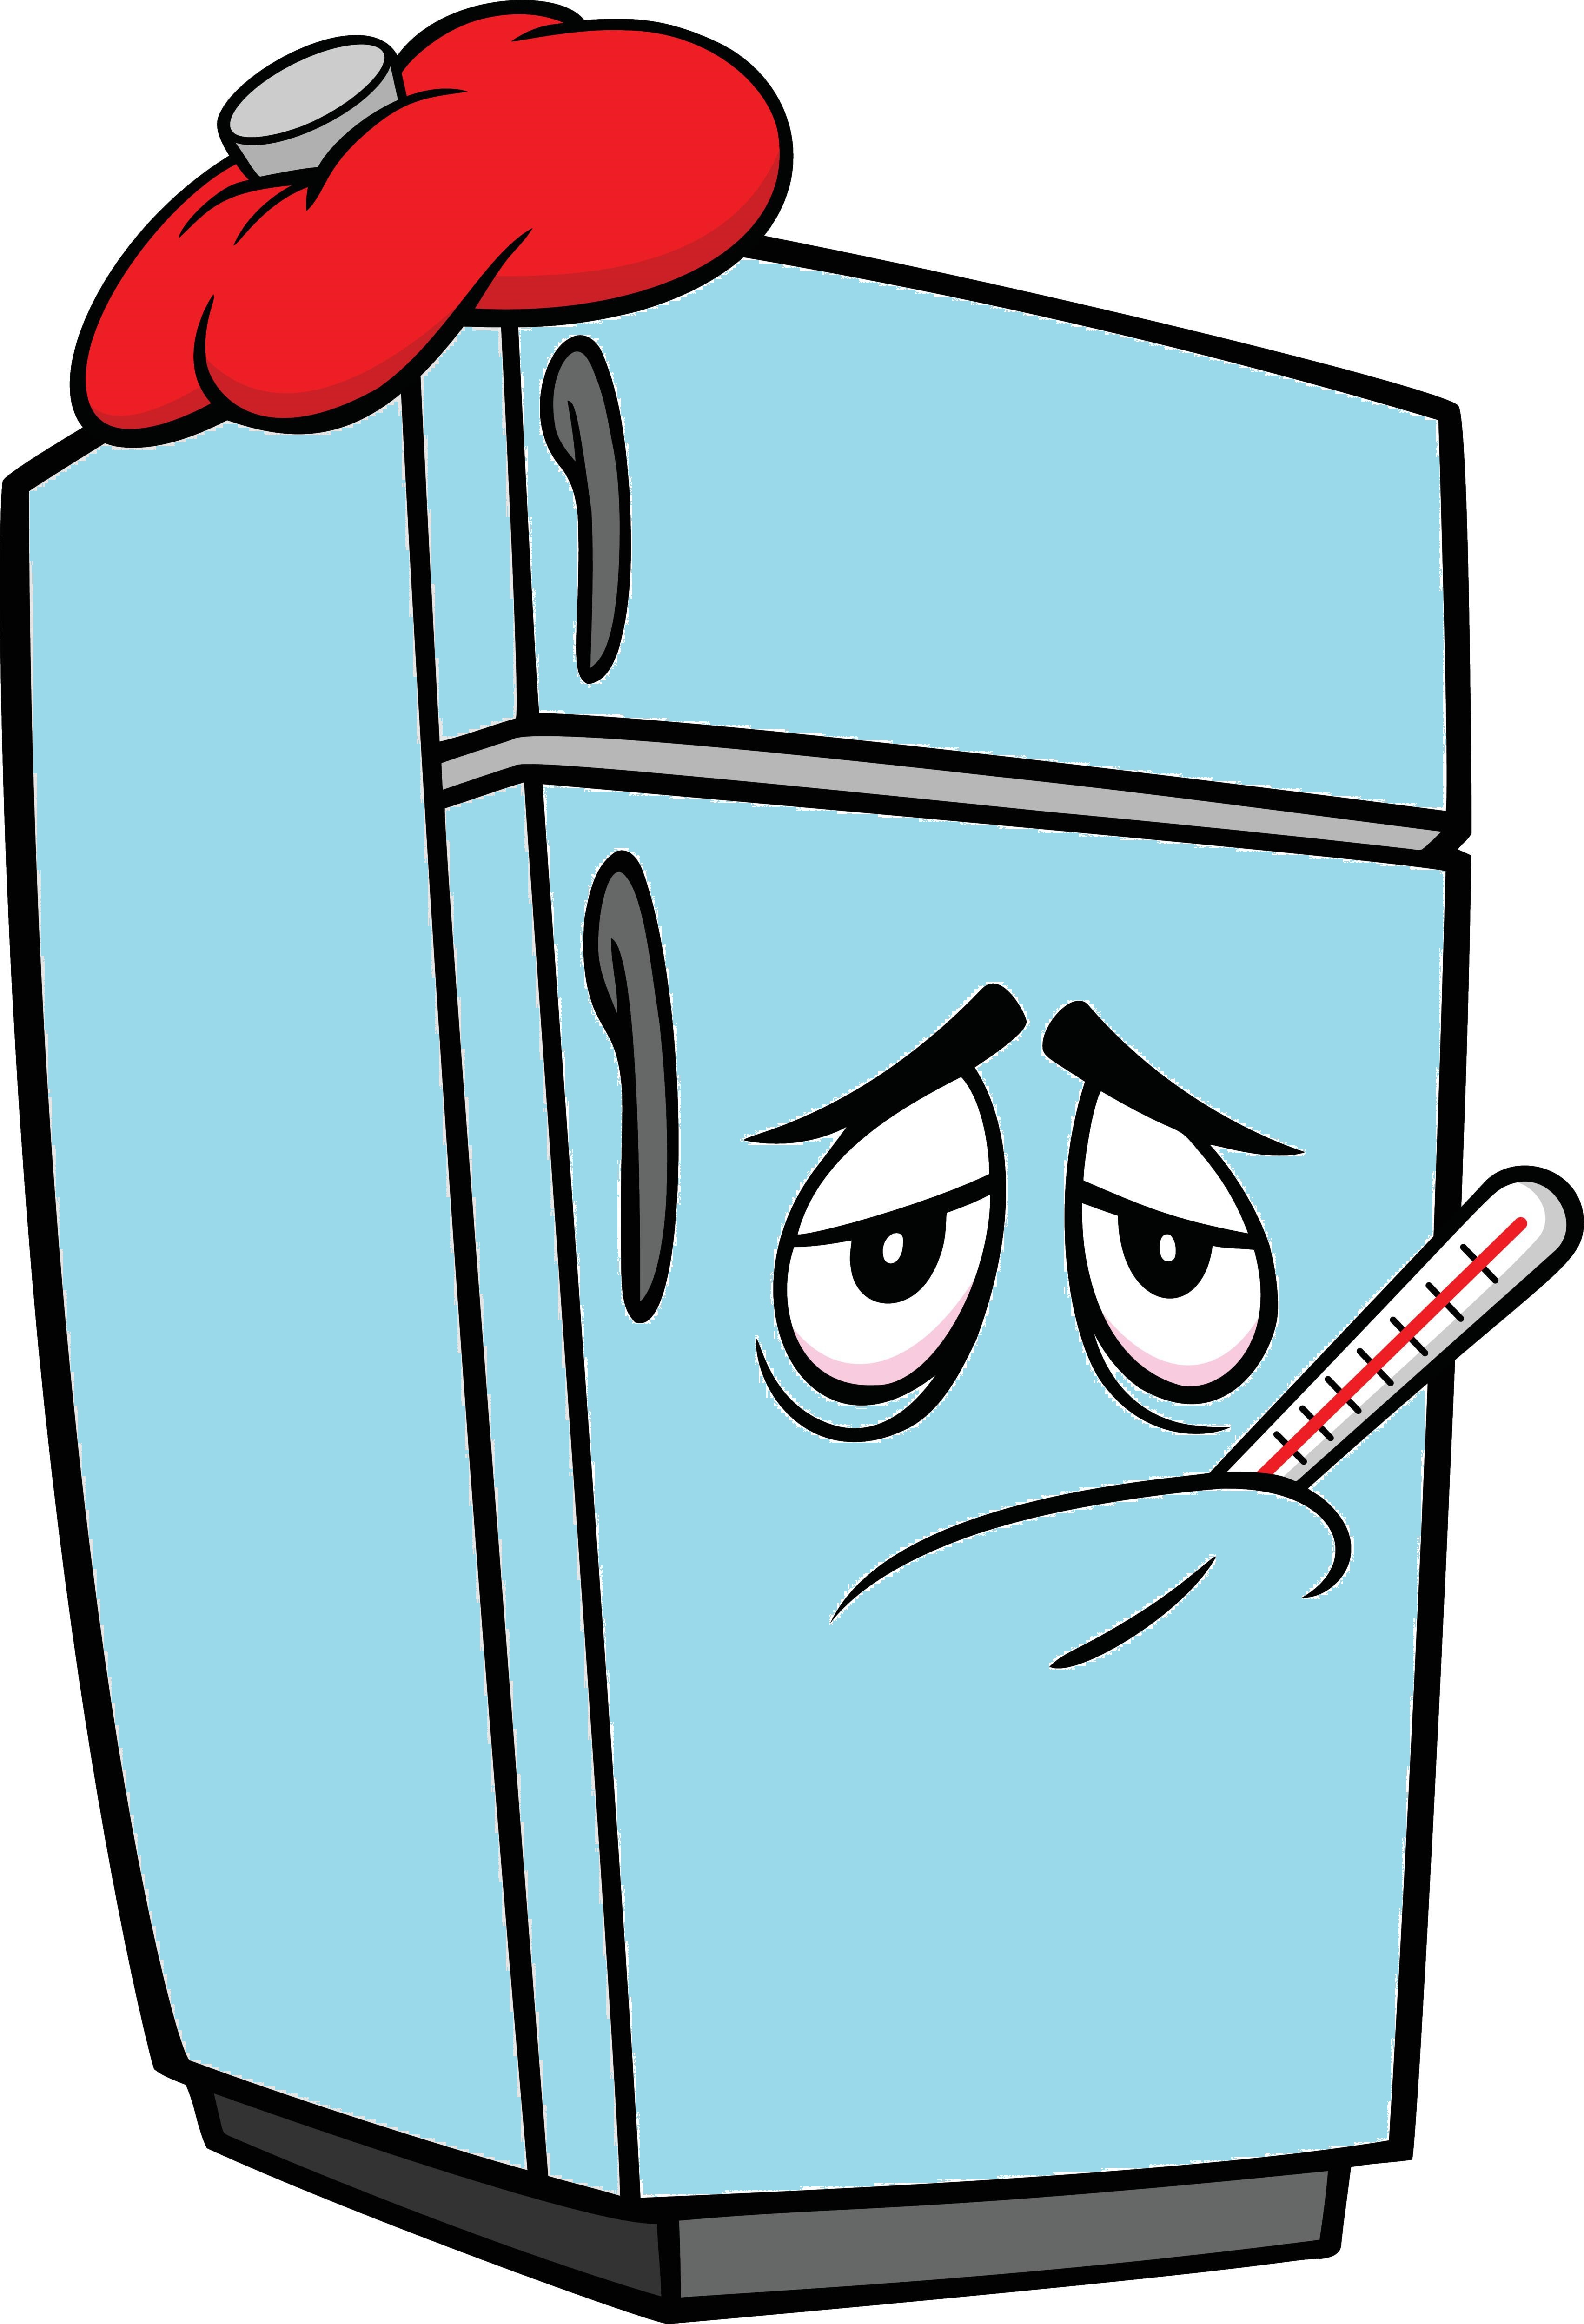 Refrigerator Mascot Sick - A cartoon illustration of a sick Refrigerator Mascot.